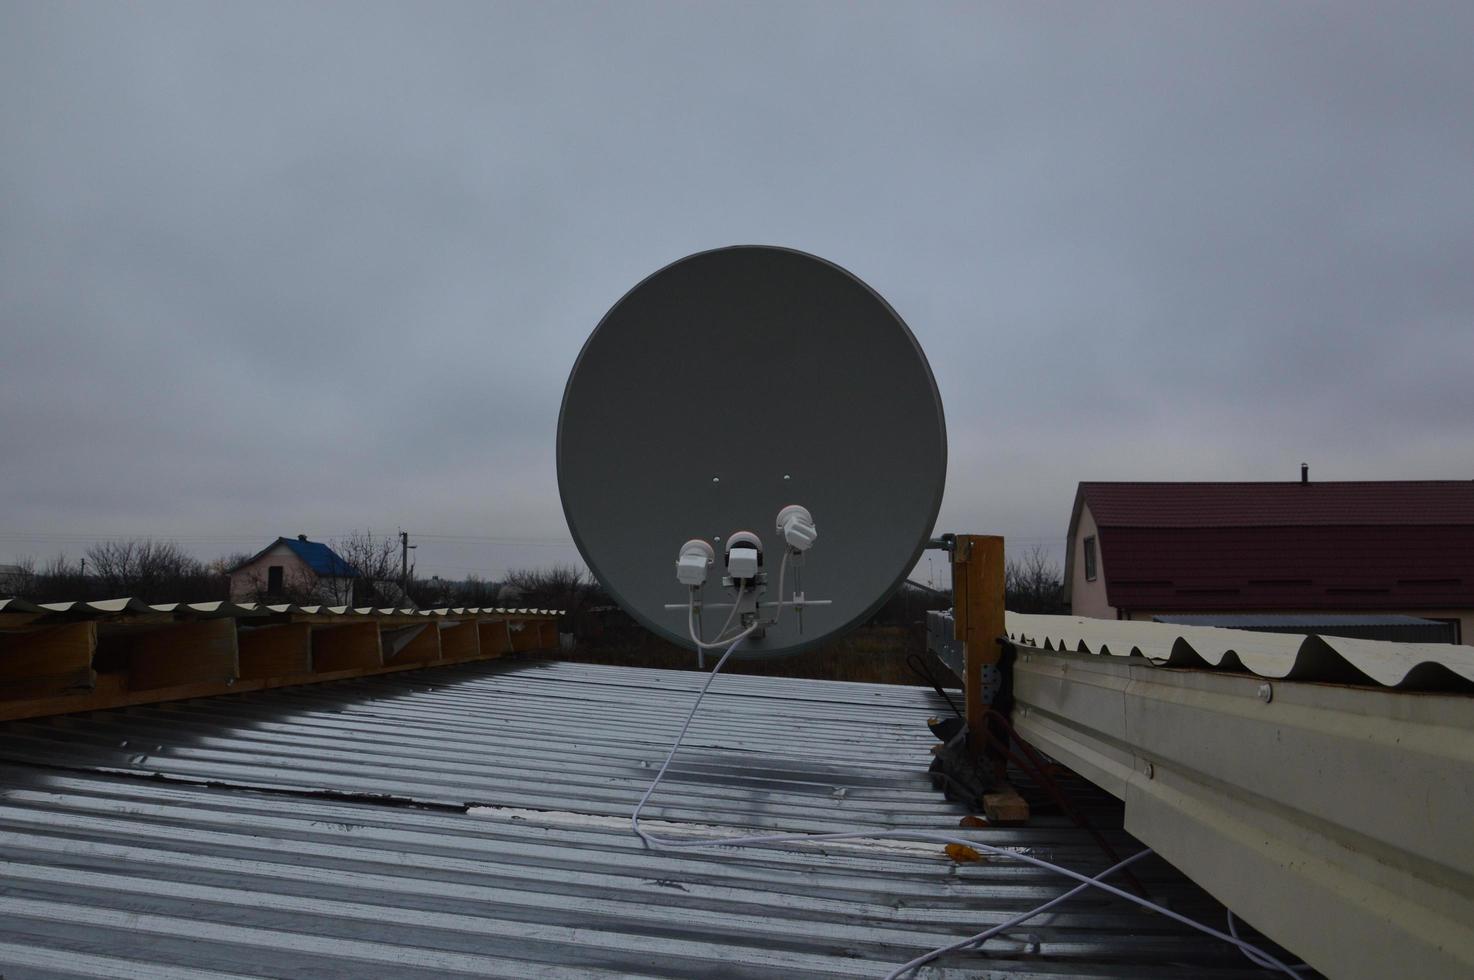 Herstellung einer Halterung zur Montage einer Satellitenschüssel auf dem Dach eines Gebäudes foto